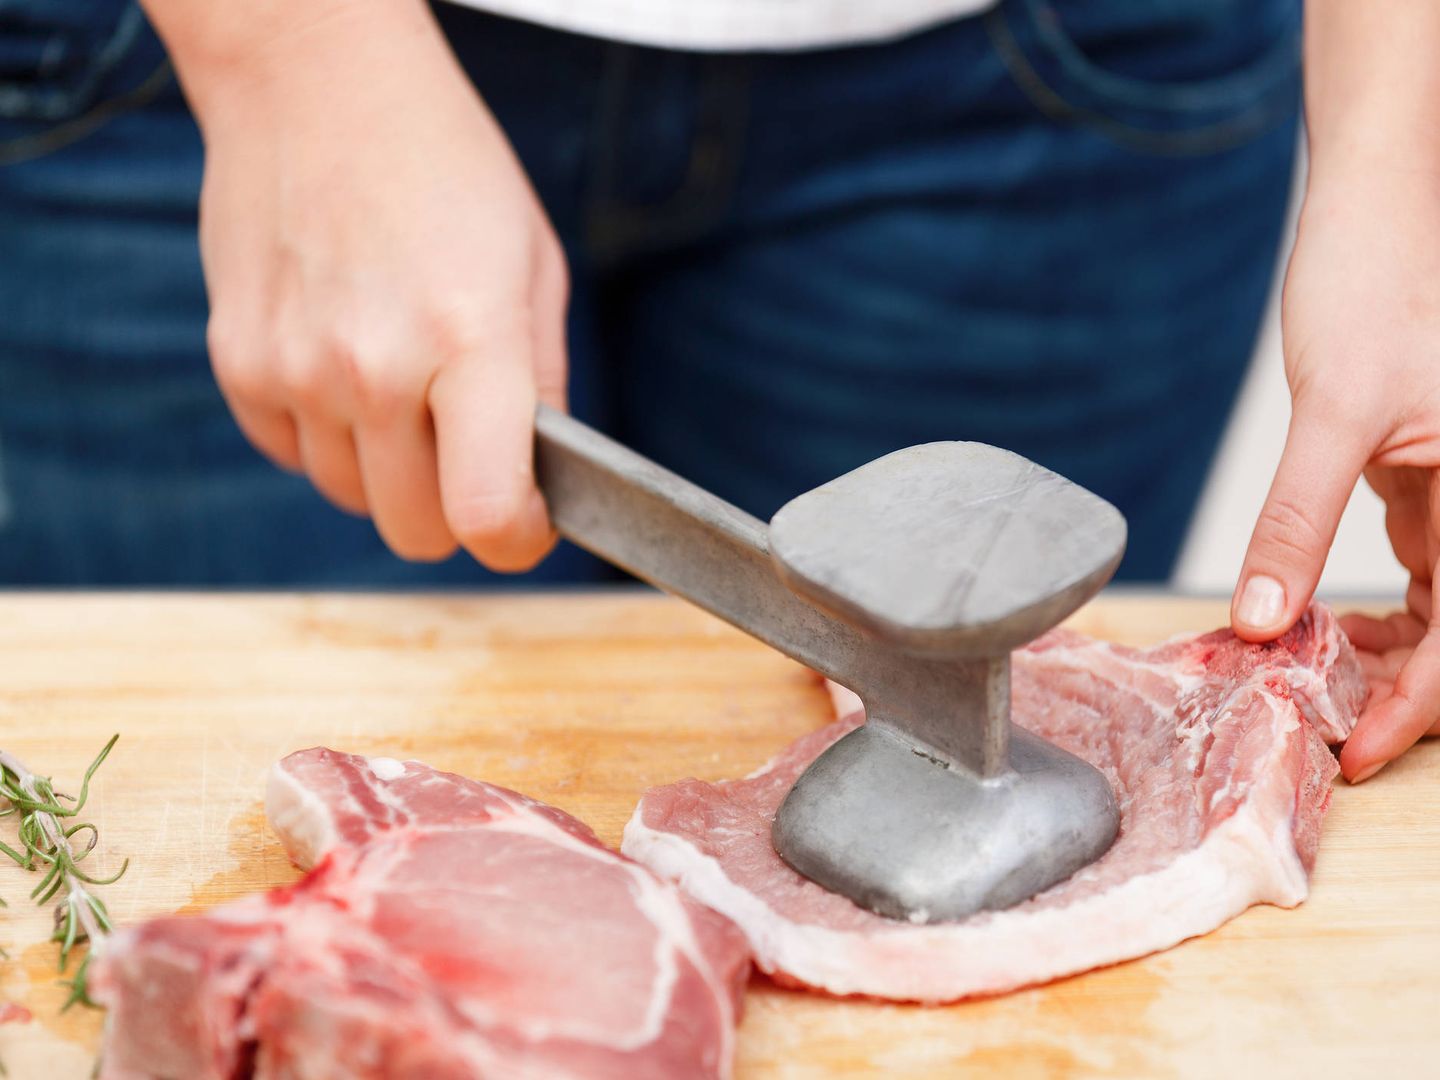 Esta herramienta es más habitual utilizarla en platos con carne de ternera. (iStock)